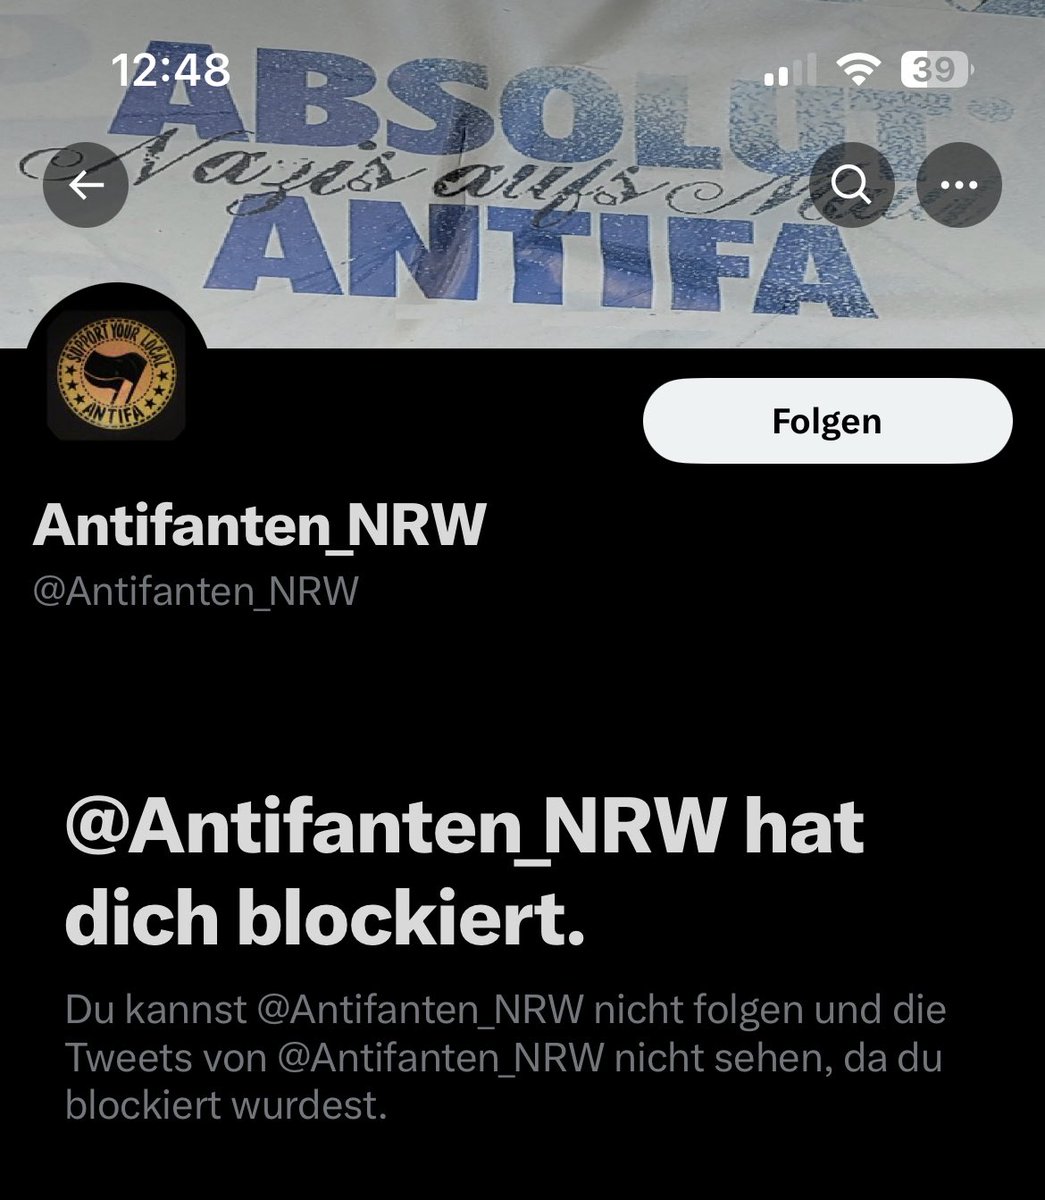 Meldet und blockiert diesen FalseFlag @Antifanten_NRW Account, mir haben mehrere geschrieben das er gezielt falsche Uhrzeiten oder Ortsangaben macht um euch in die Irre zu führen. 

CC: @aalev_info